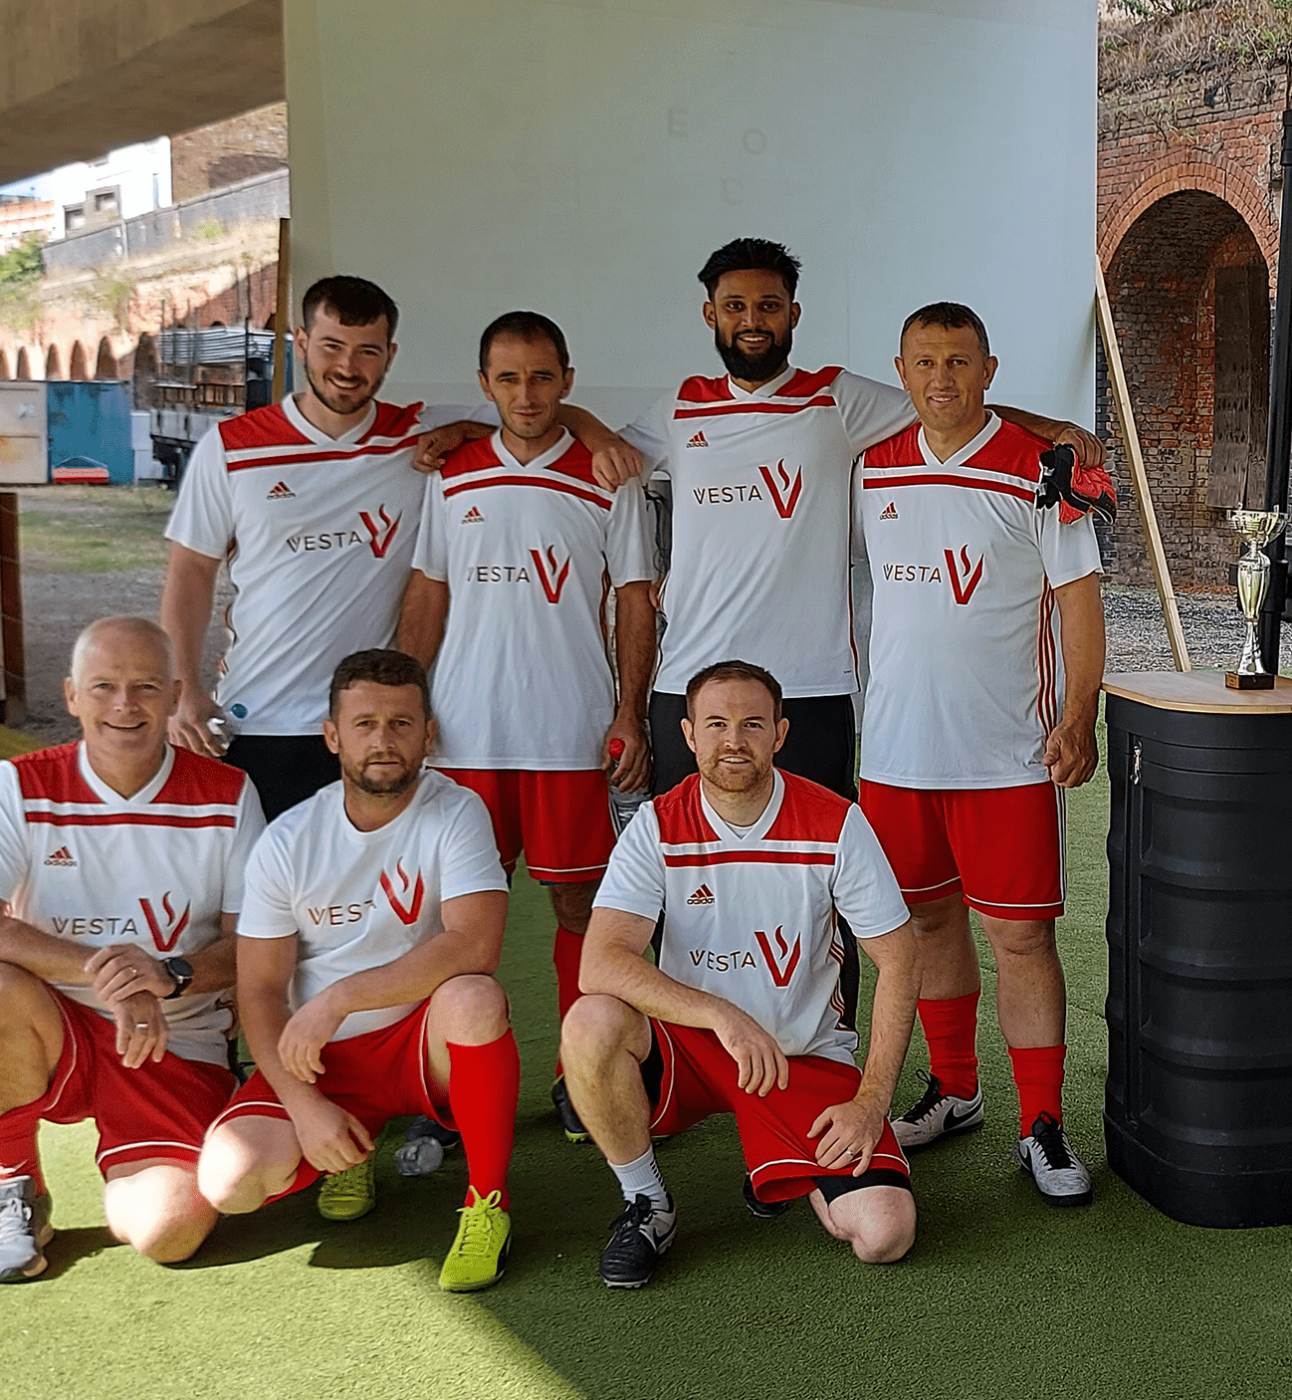 Vesta football team